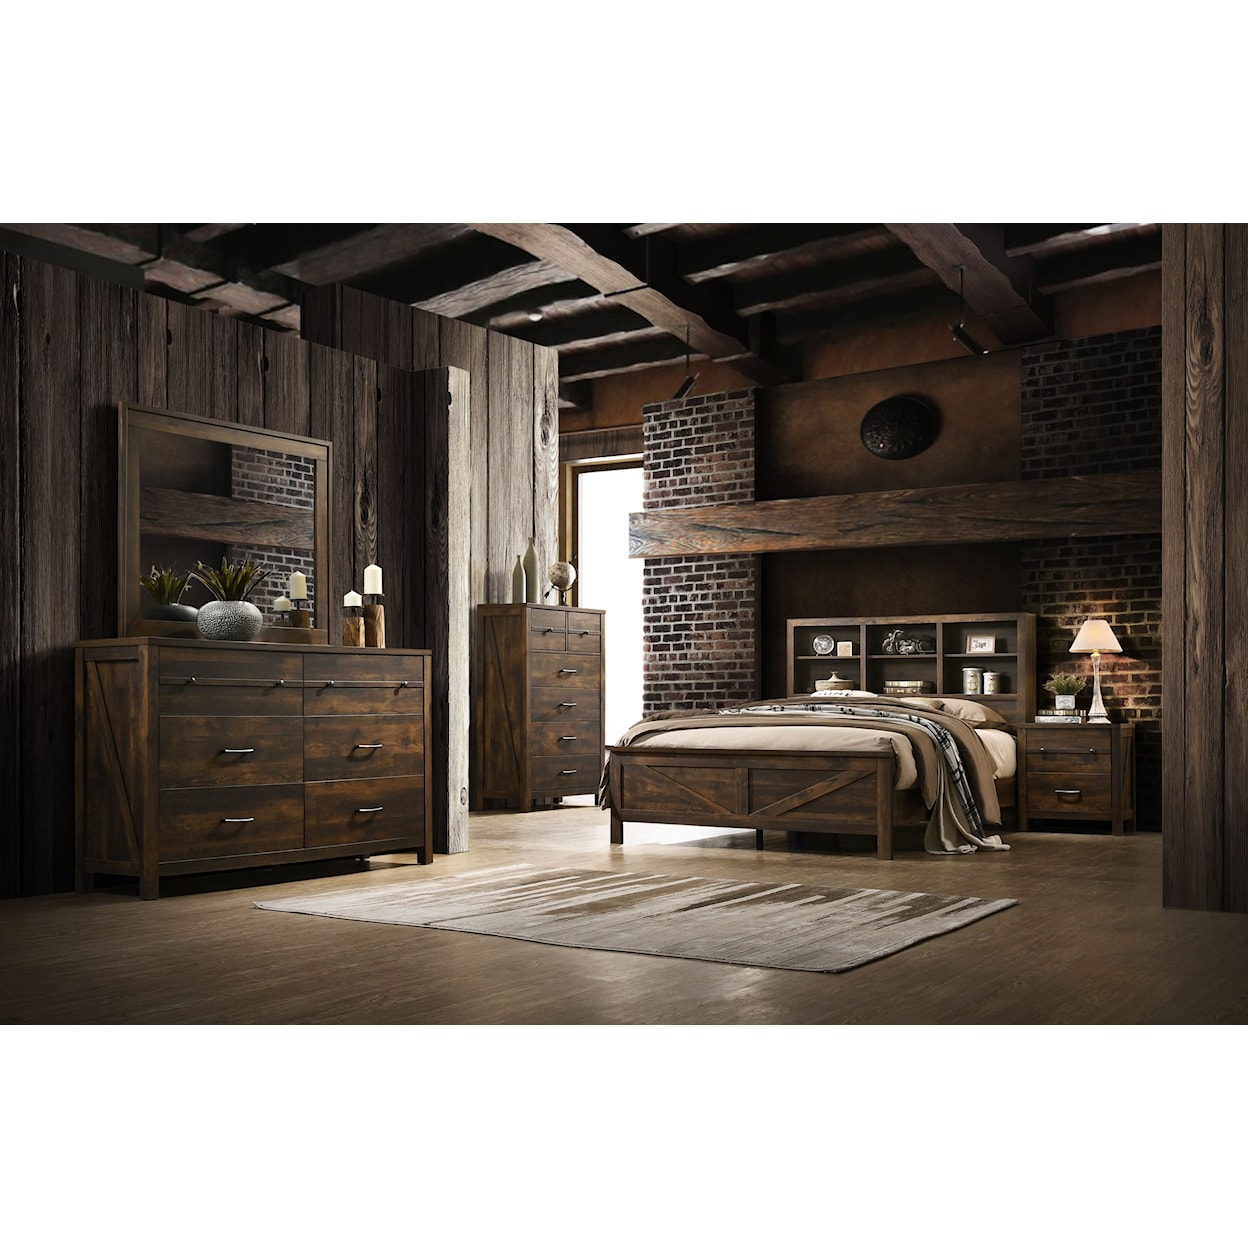 Lifestyle Rustic Oak RUSTIC OAK TWIN BED |